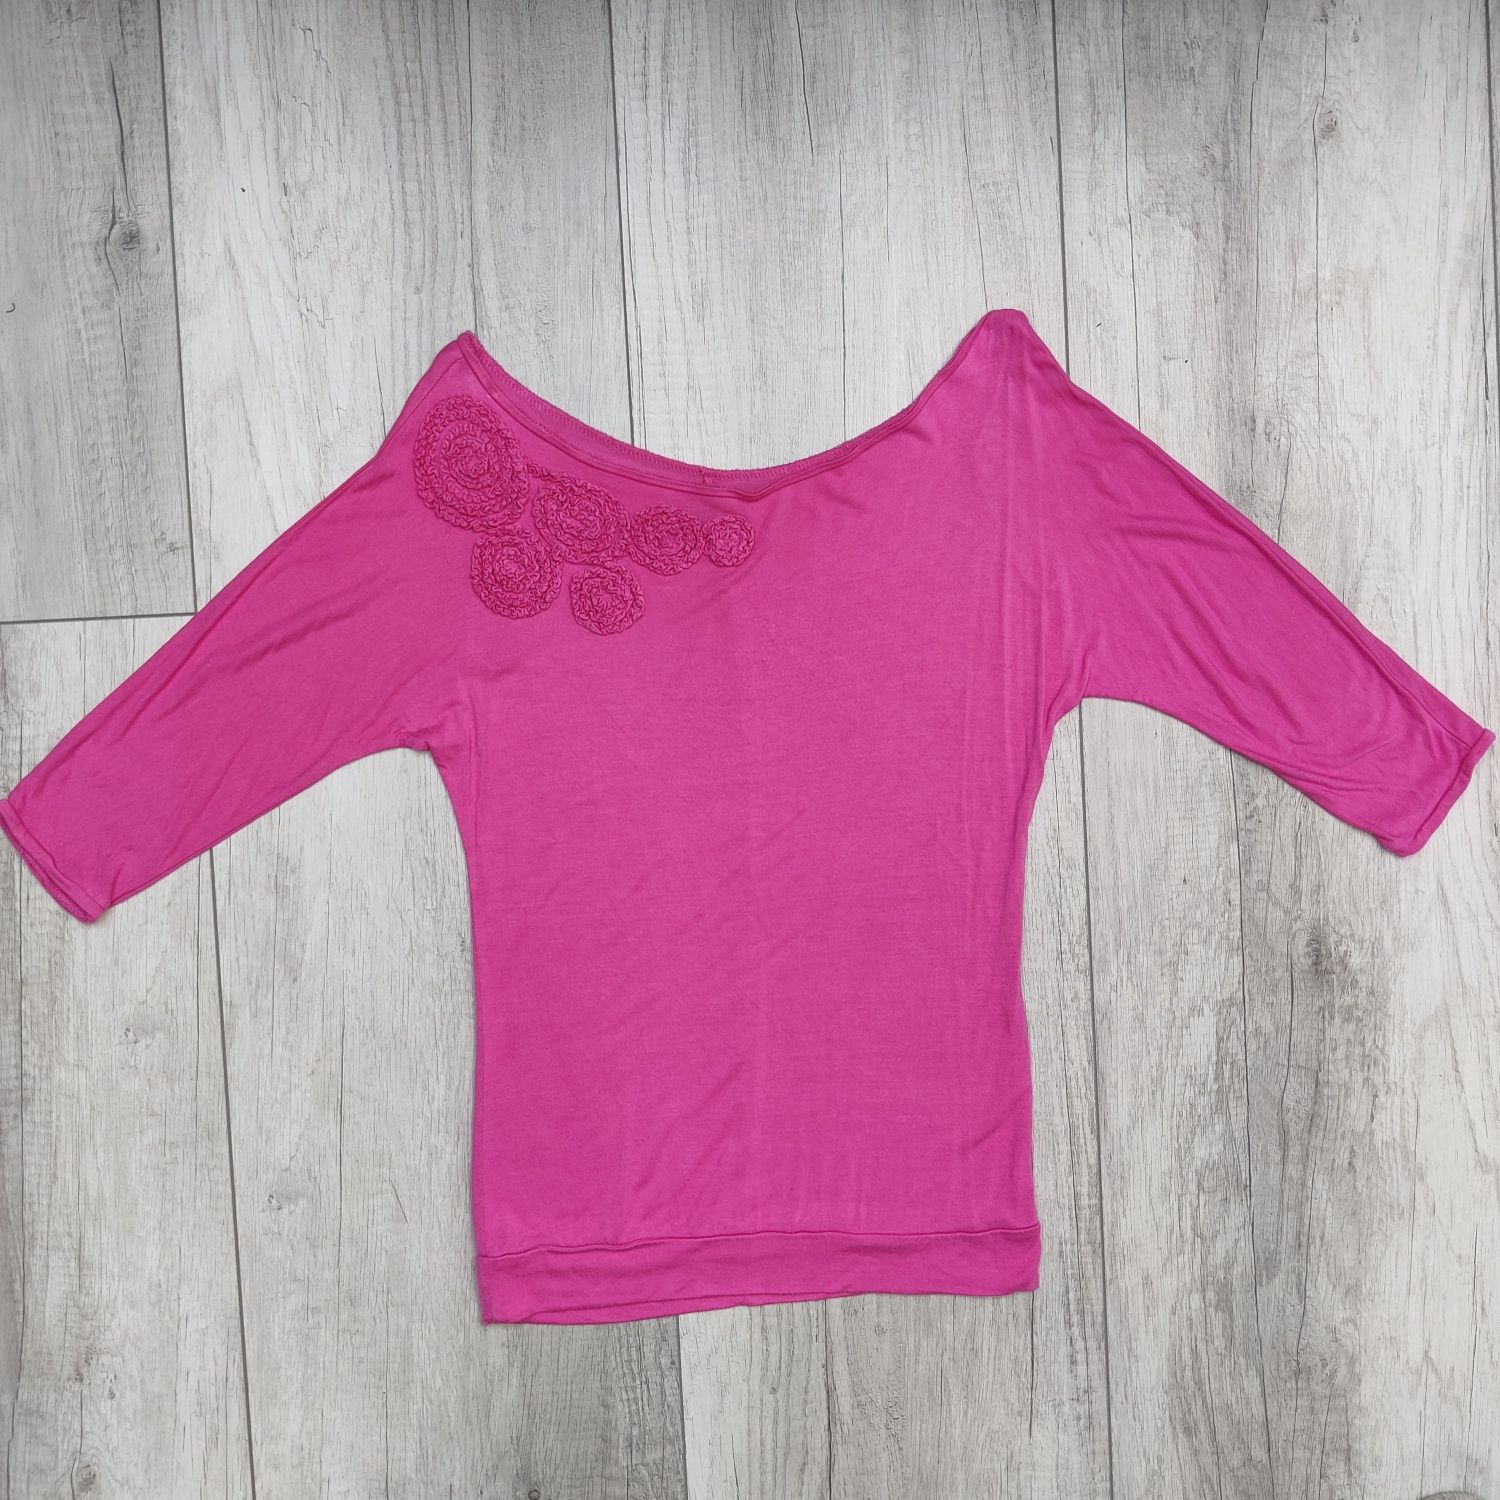 Różowa bluzka damska rękaw 3/4, koszulka z haftem, top, Mohito, XS /34